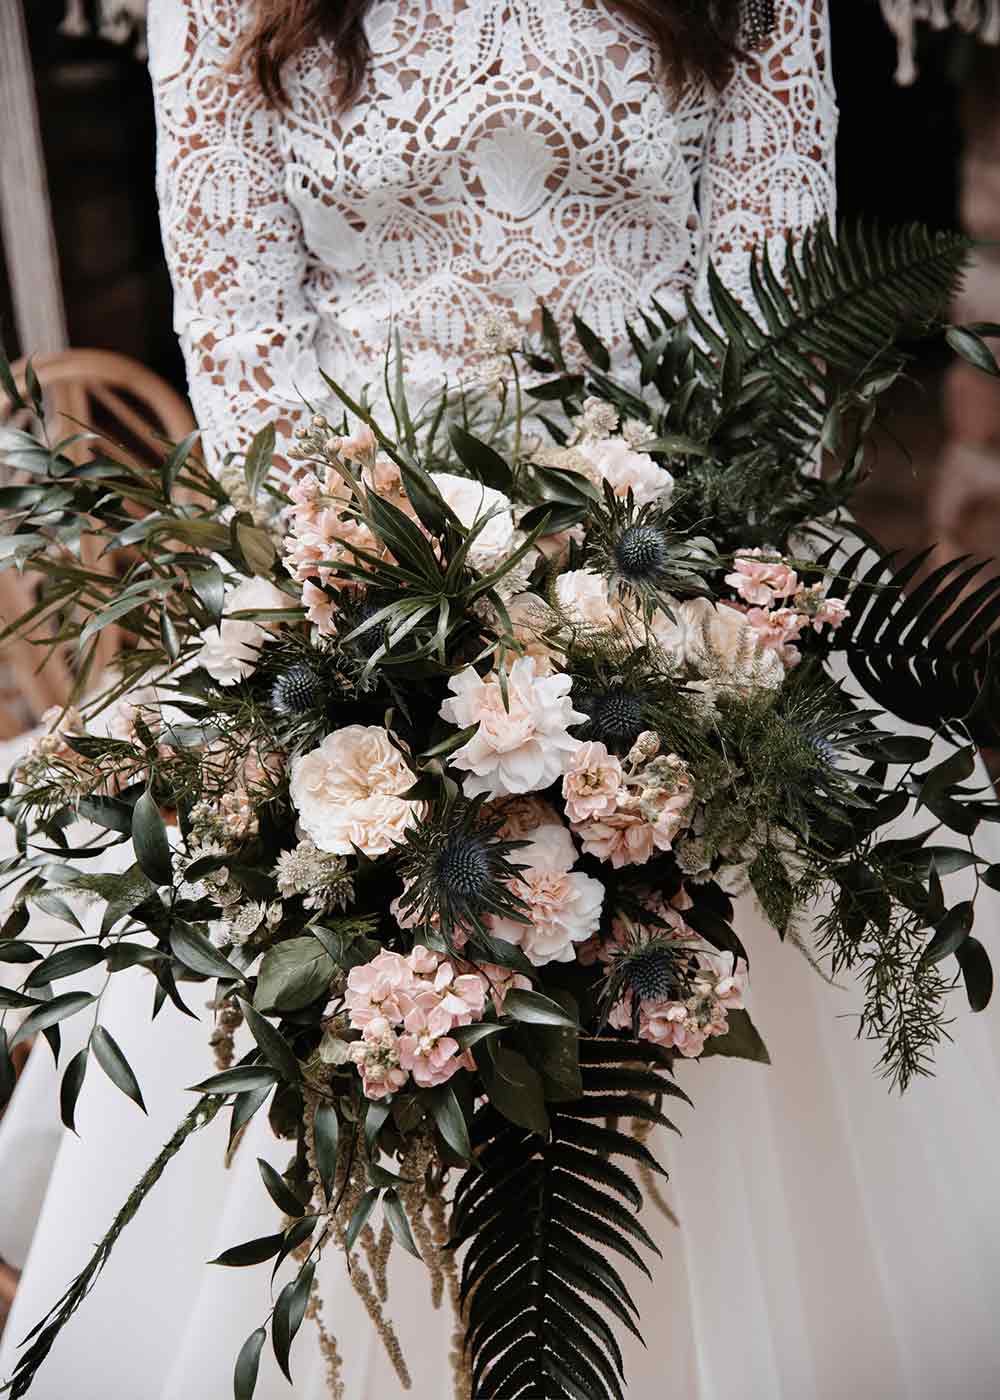 Der Brautstrauß besteht aus locker zusammengesteckten Wildblumen in Rosatönen und grünen Akzenten.